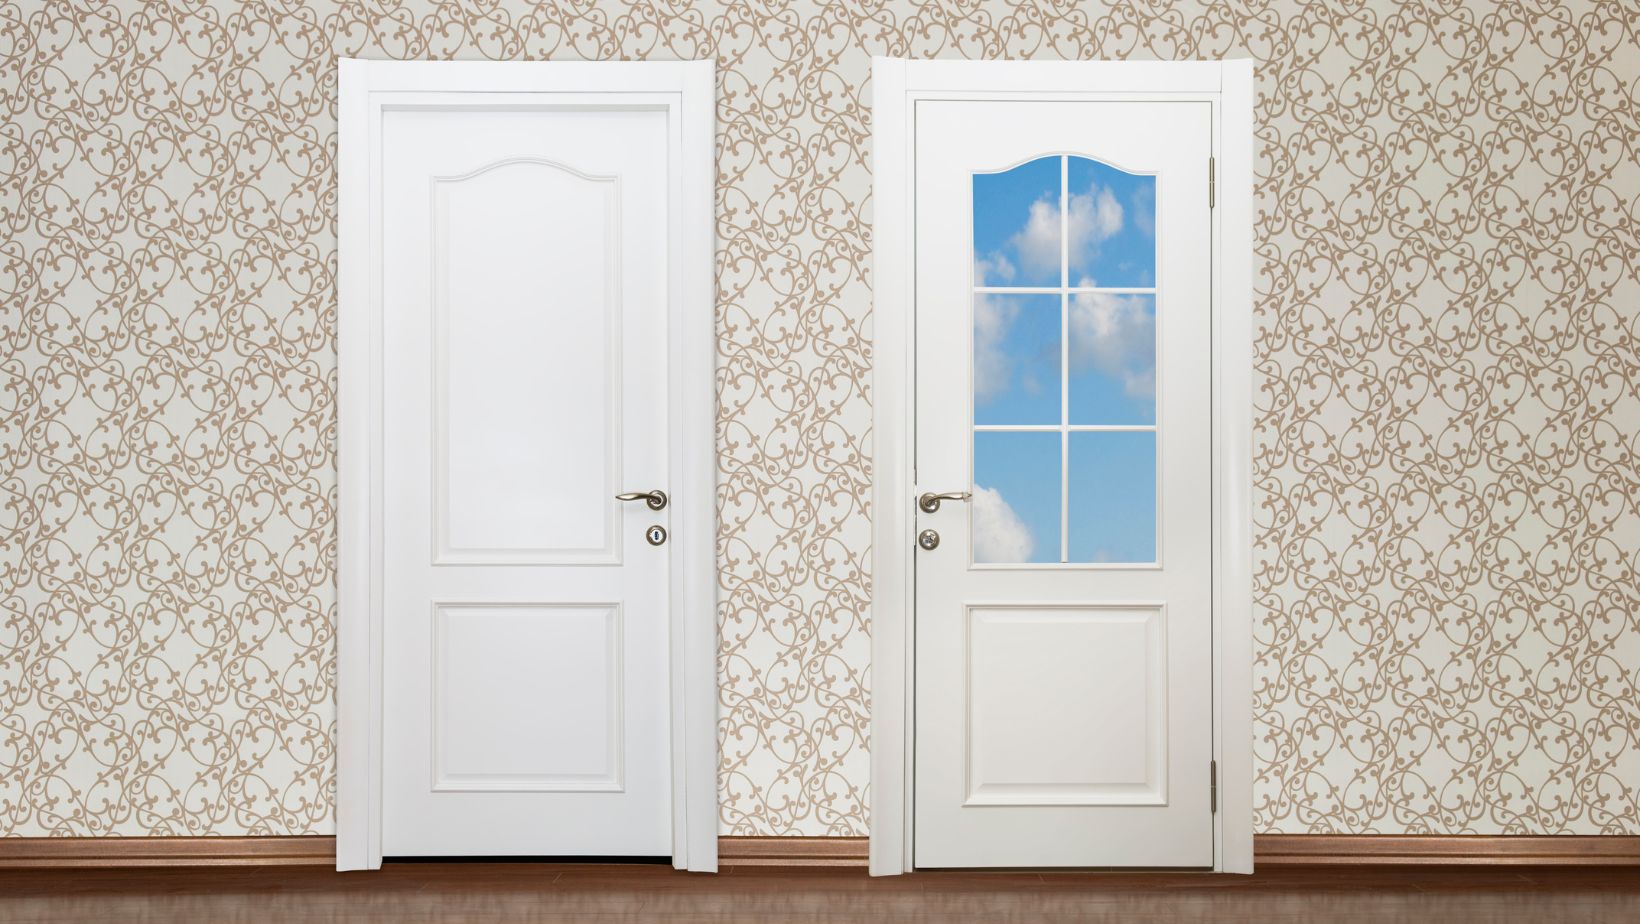 A white steel door beside a white fibreglass door.